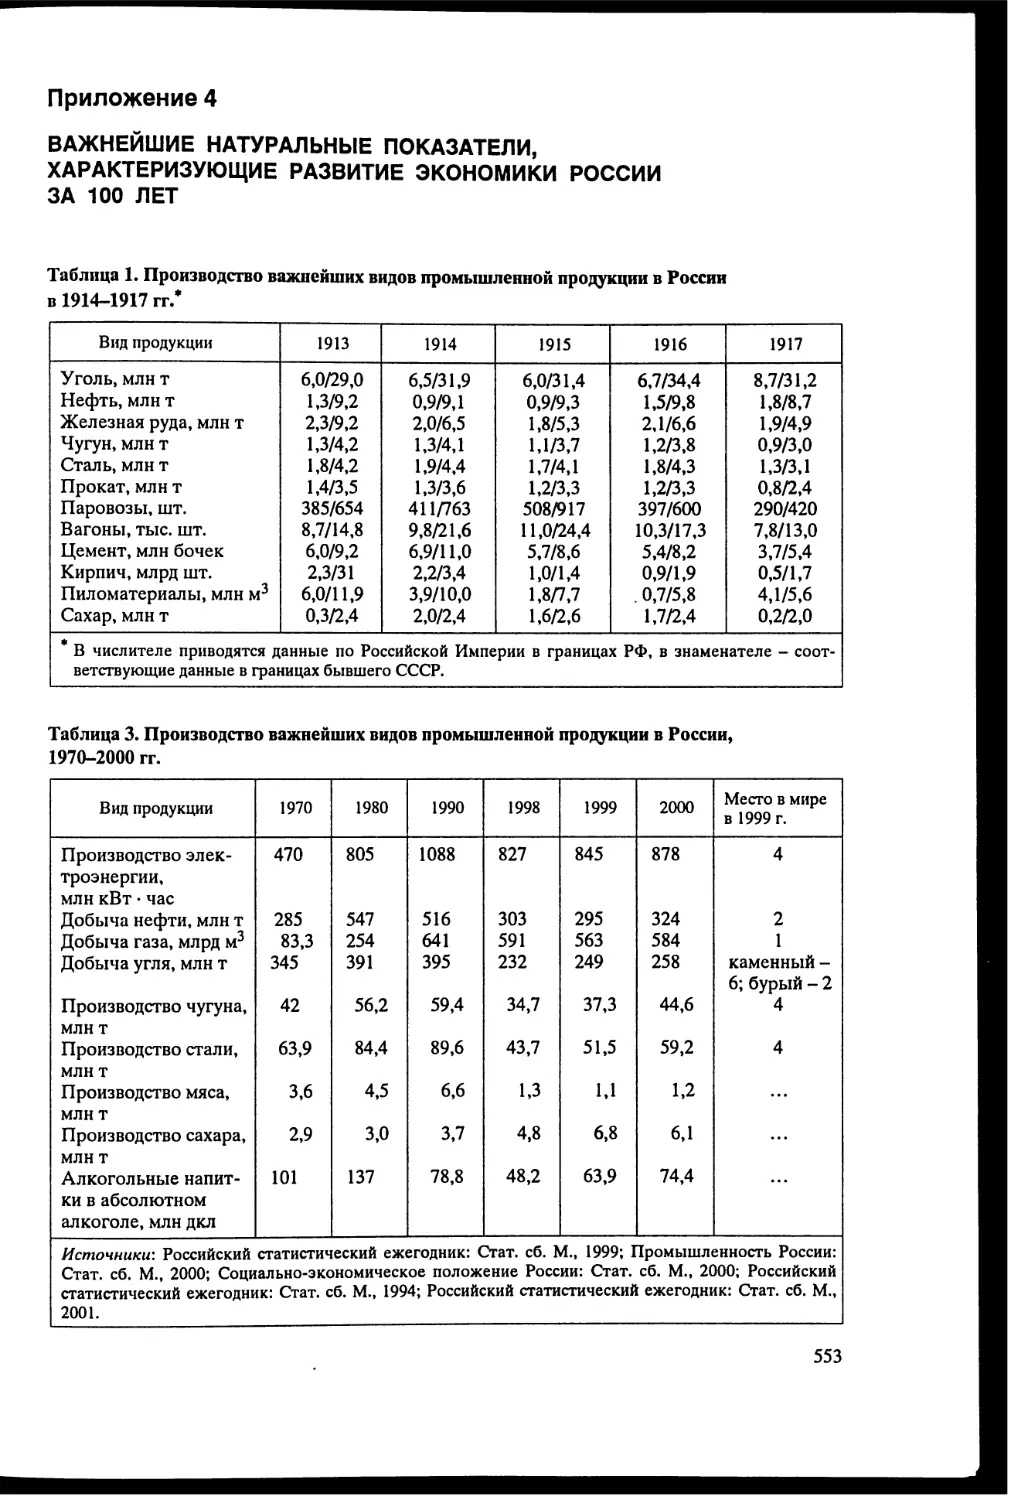 Приложение 4. Важнейшие показатели, характеризующие развитие экономики России за 100 лет [553]